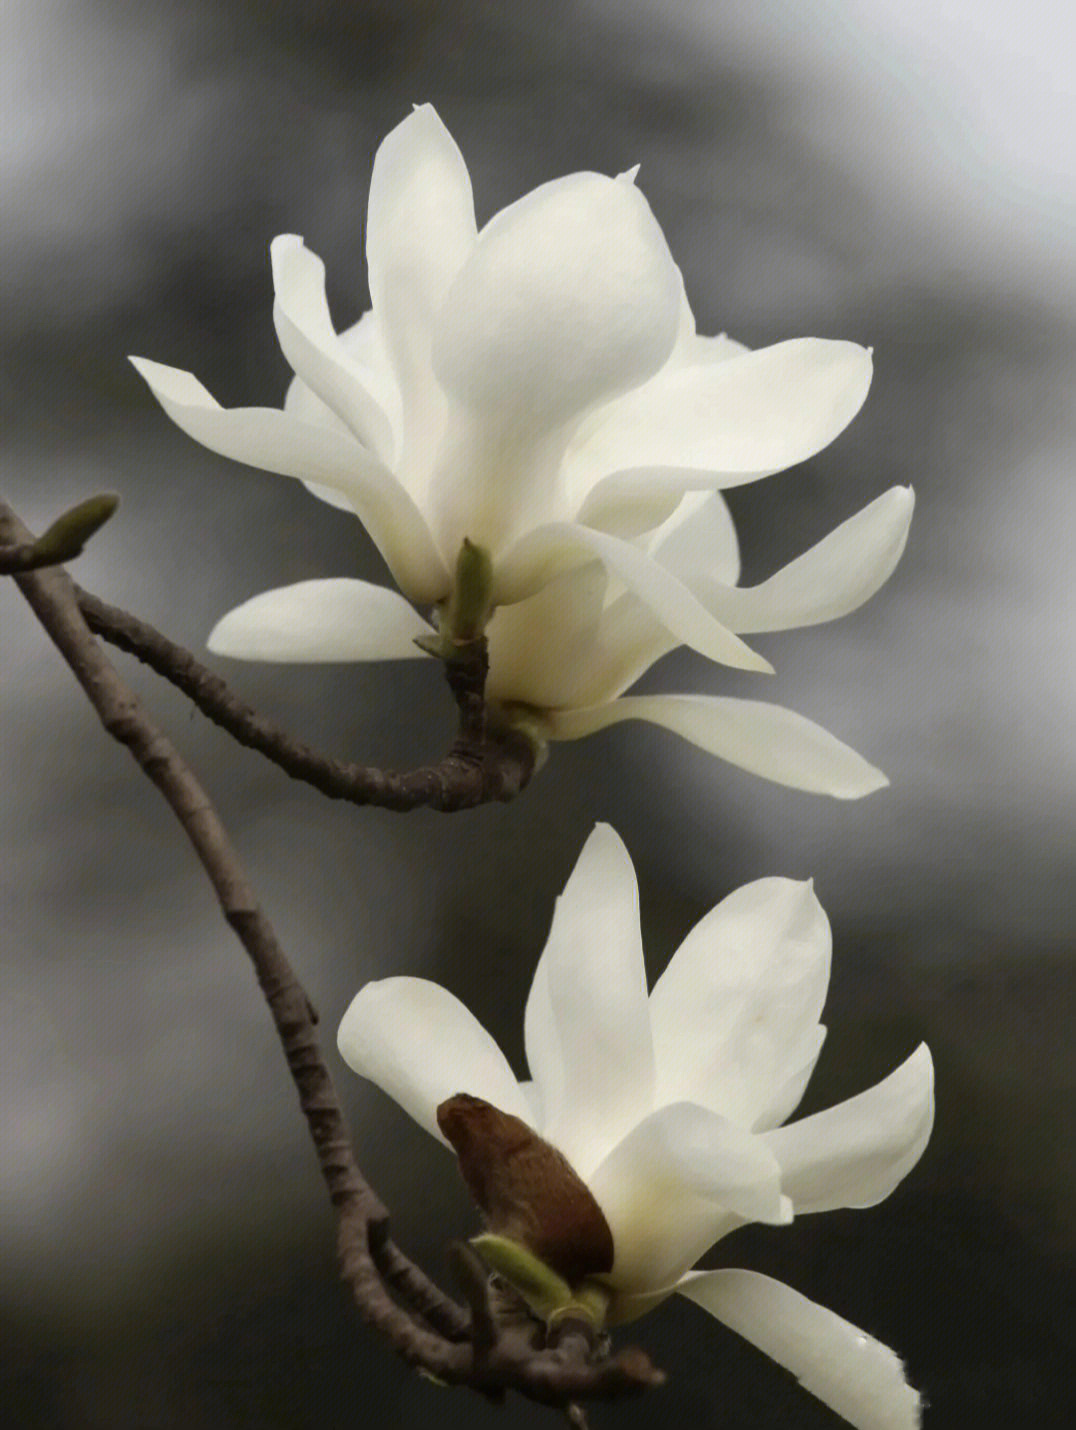 73木兰花的花语:为生命崇高,纯净,洁净,素雅.